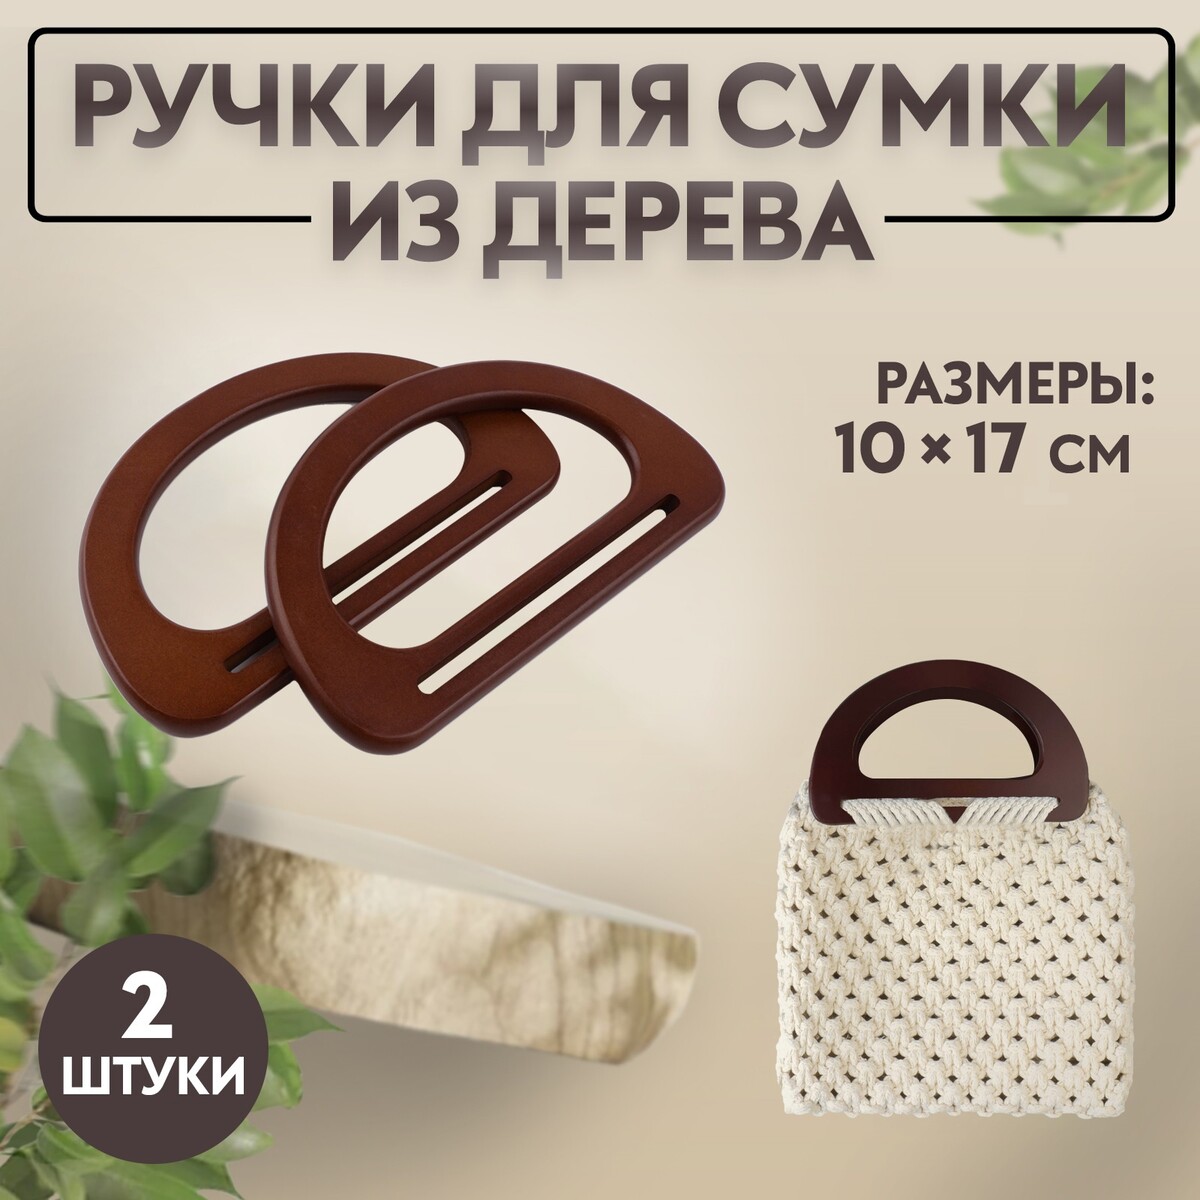 Ручки для сумки деревянные, 10 × 17 см, 2 шт, цвет темно-коричневый ручки для сумок деревянные плетеные d 9 8 × 5 9 13 5 × 9 5 см 2 шт коричневый